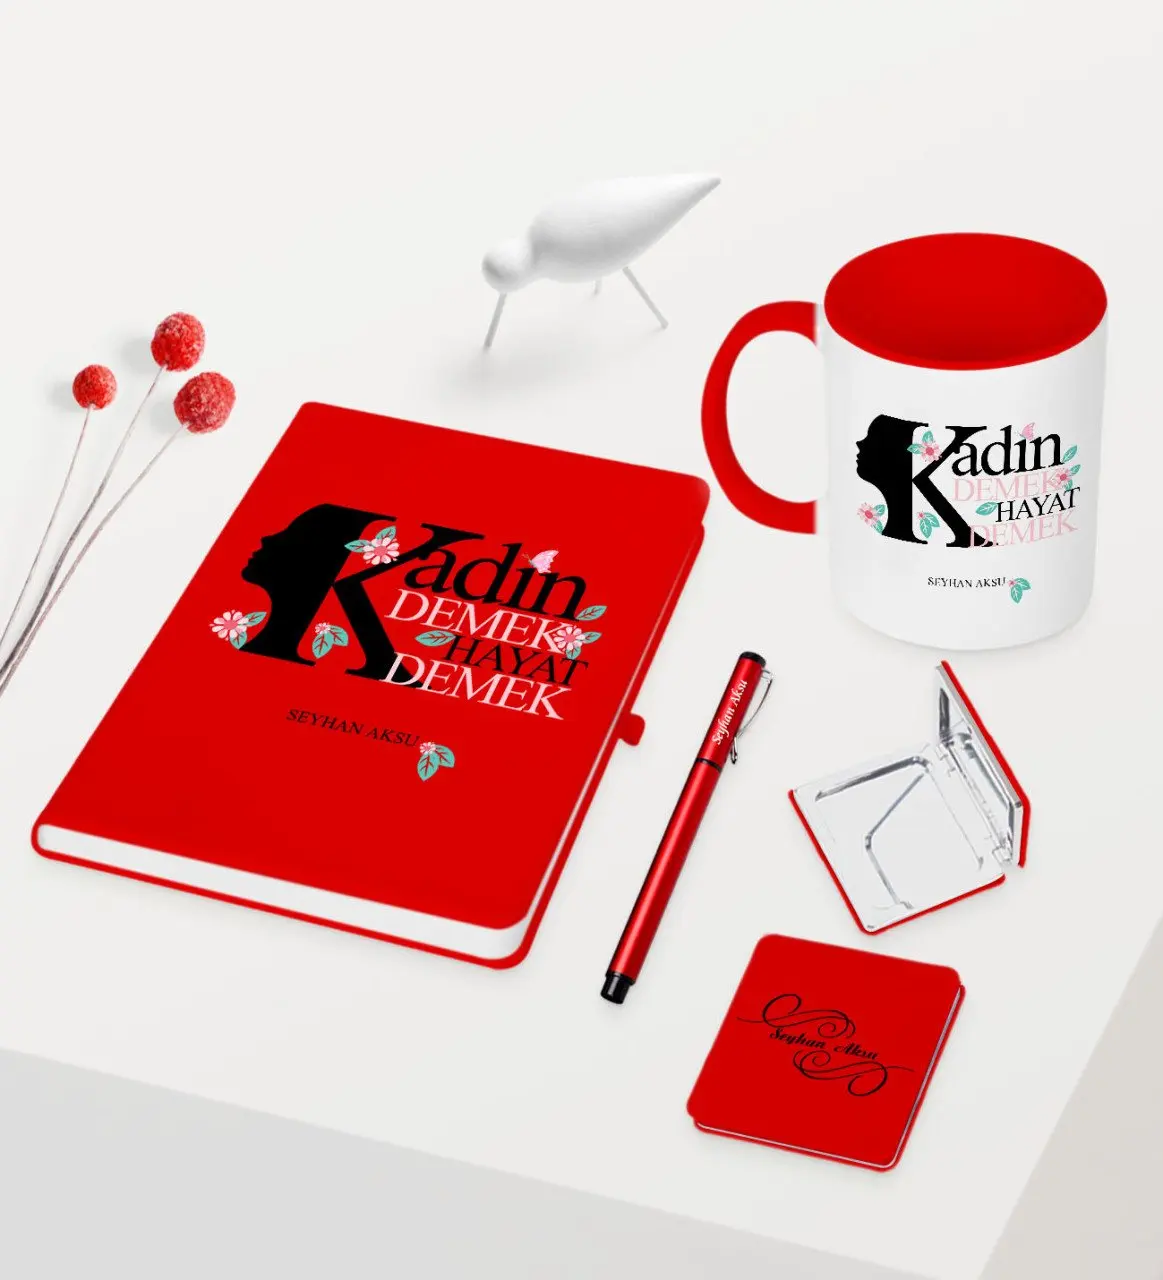 

Персонализированные пользовательские женщины день тематические красная ручка для записной книжки чашки Зеркало Набор-1 забавные воспомин...